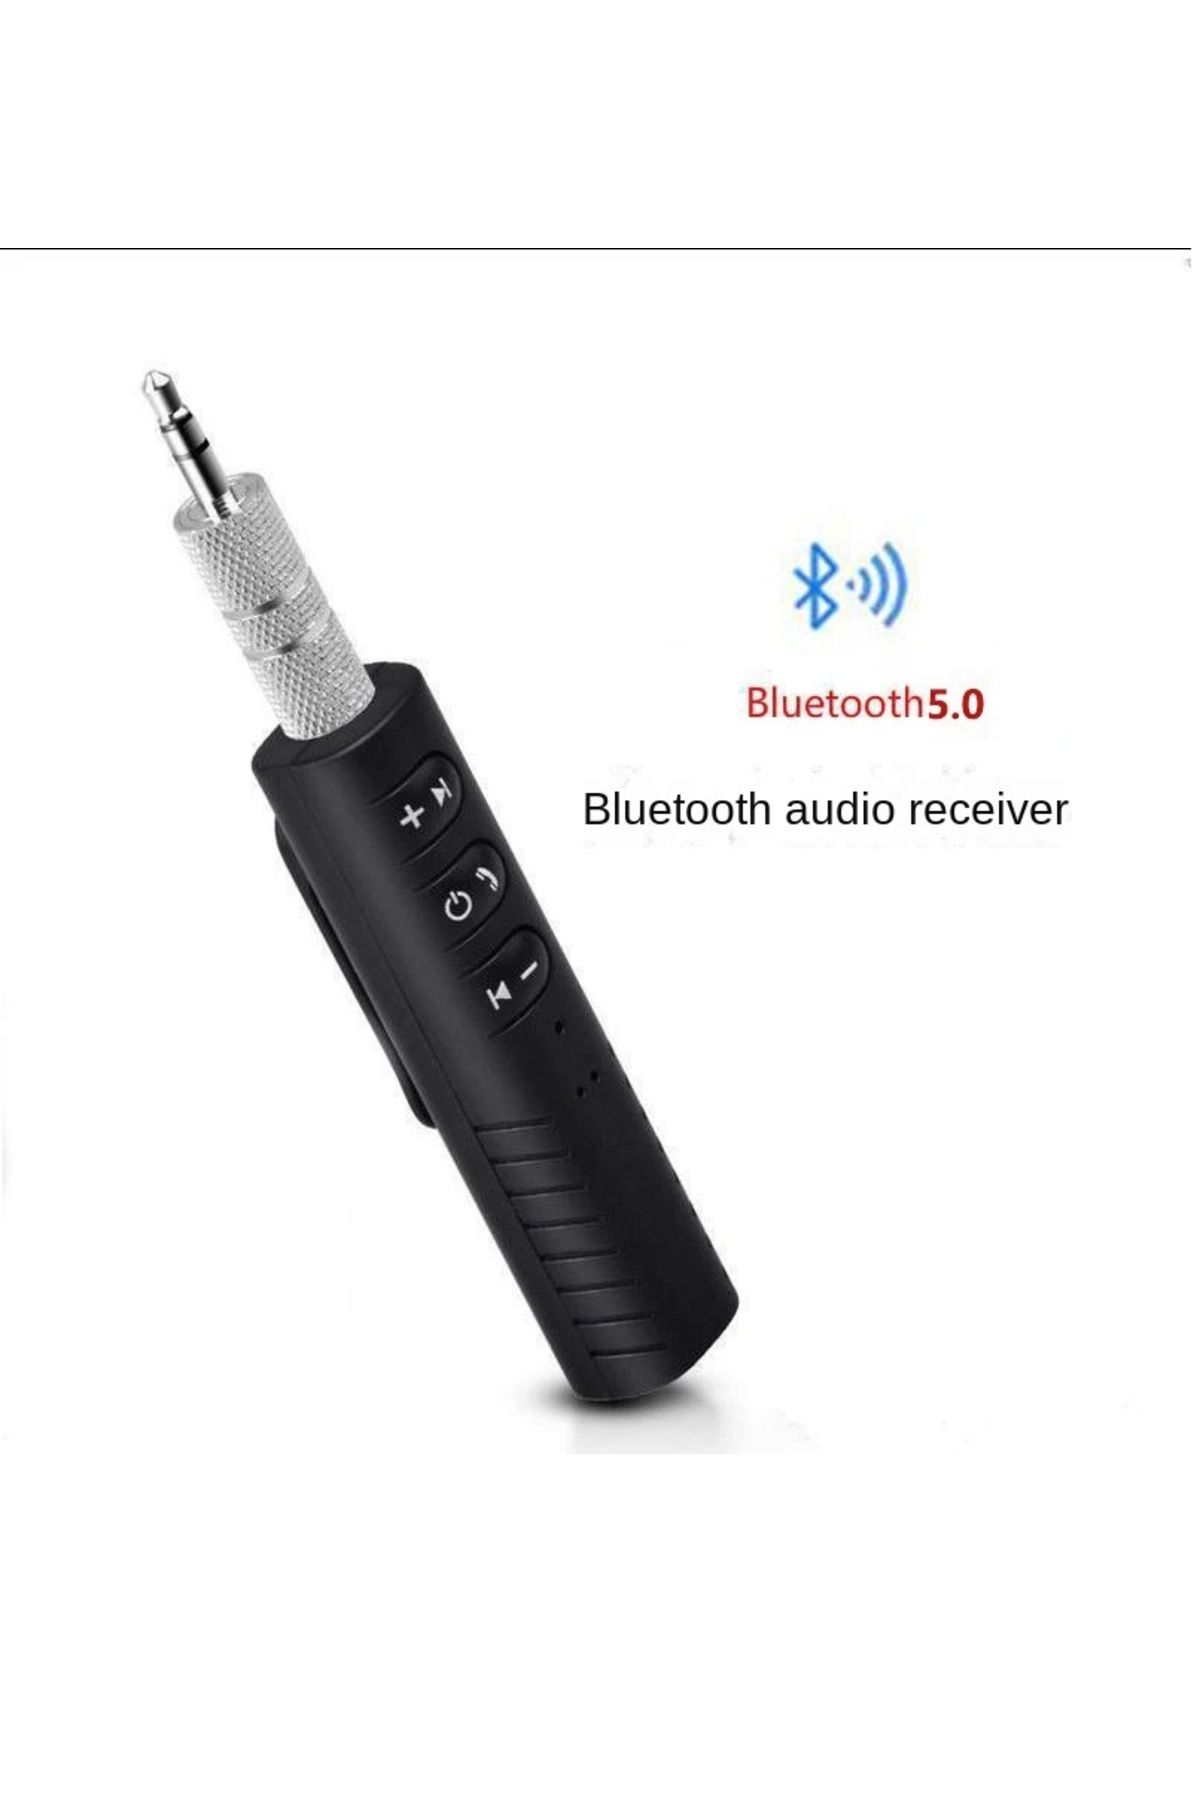 MyBlack Kablosuz Aux Araç Kiti Bluetooth 5.0 Alıcı Adaptörü 3.5mm Jack Araba müzik ses Aux Kit